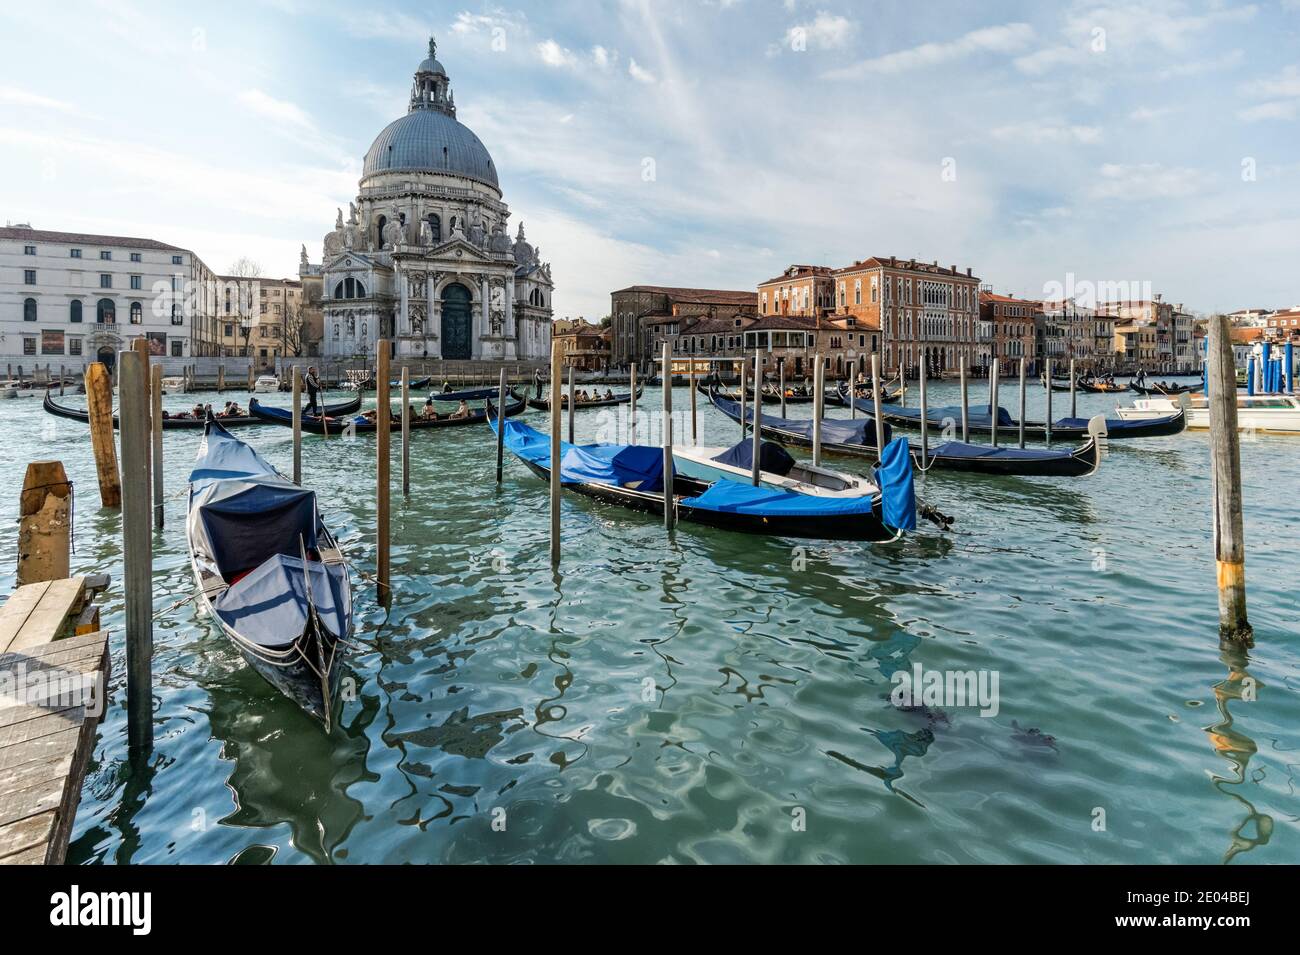 Gondola veneziana al Canal Grande, gondole ormeggiate a Venezia con la basilica di Santa Maria della Salute sullo sfondo, Italia Foto Stock